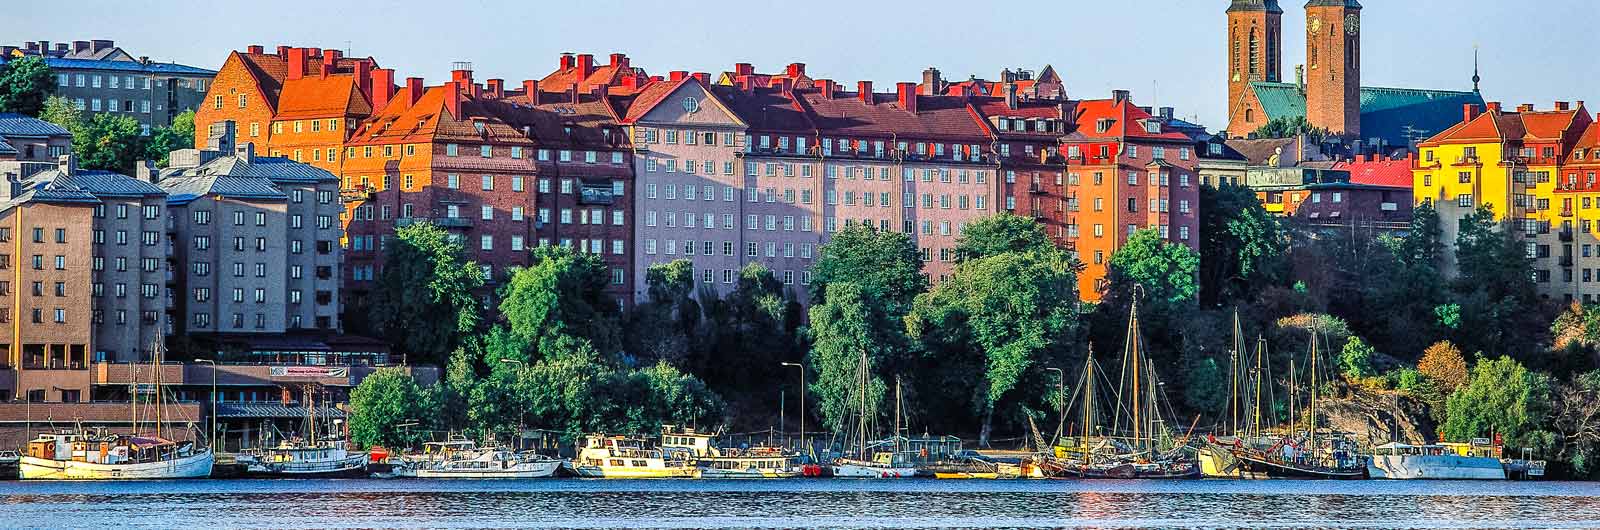 Byggnader i solljus på Södermalm